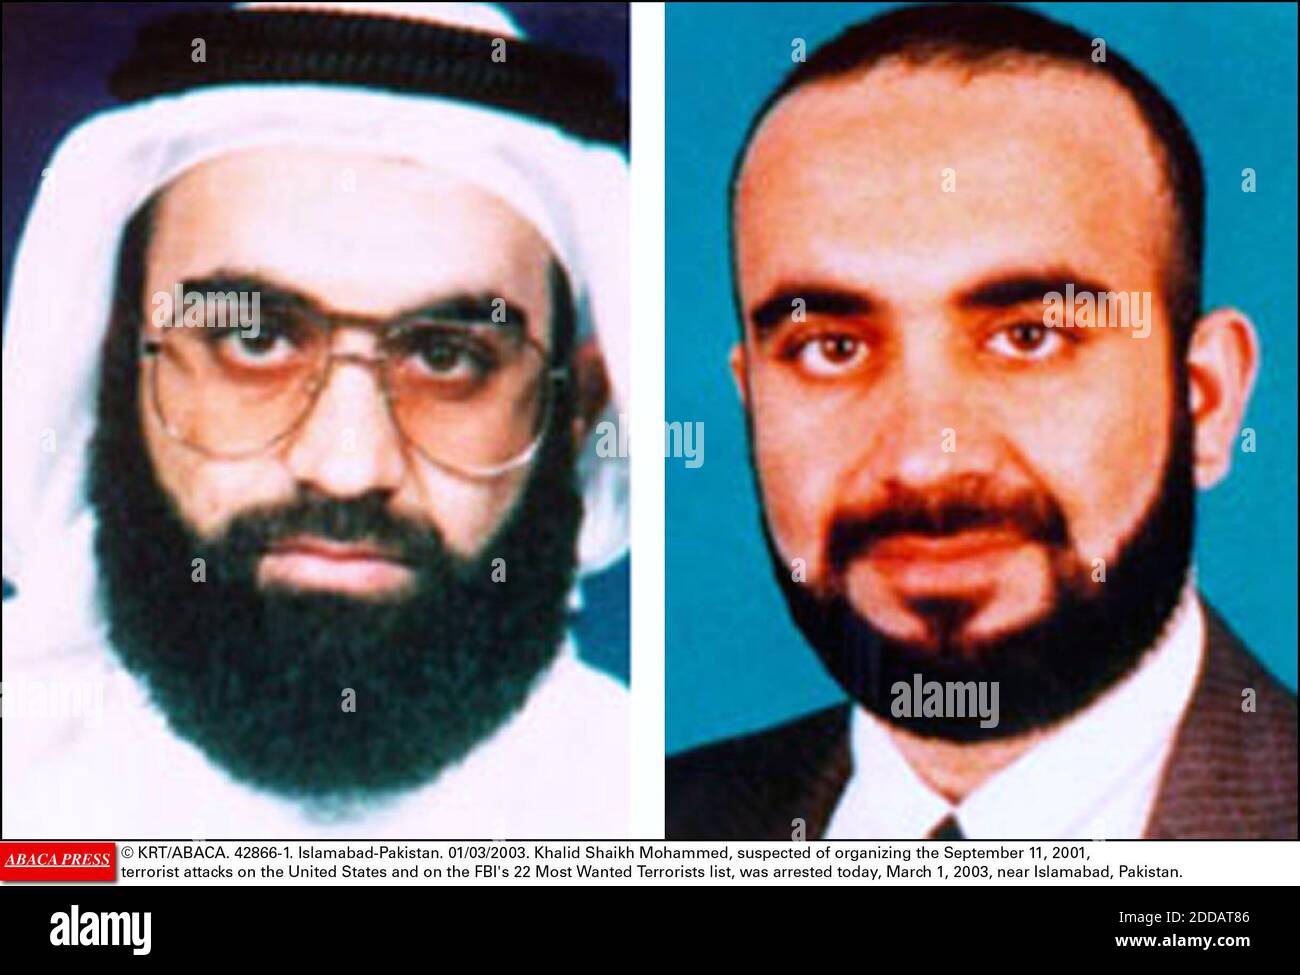 KEIN FILM, KEIN VIDEO, KEIN TV, KEIN DOKUMENTARFILM - © KRT/ABACA. 42866-1. Islamabad-Pakistan. 01/03/2003. Khalid Scheich Mohammed, der verdächtigt wurde, die Terroranschläge vom 11. September 2001 auf die Vereinigten Staaten und auf die Liste der 22 meistgesuchten Terroristen des FBI zu organisieren, wurde heute, am 1. März 2003, in der Nähe von I, verhaftet Stockfoto